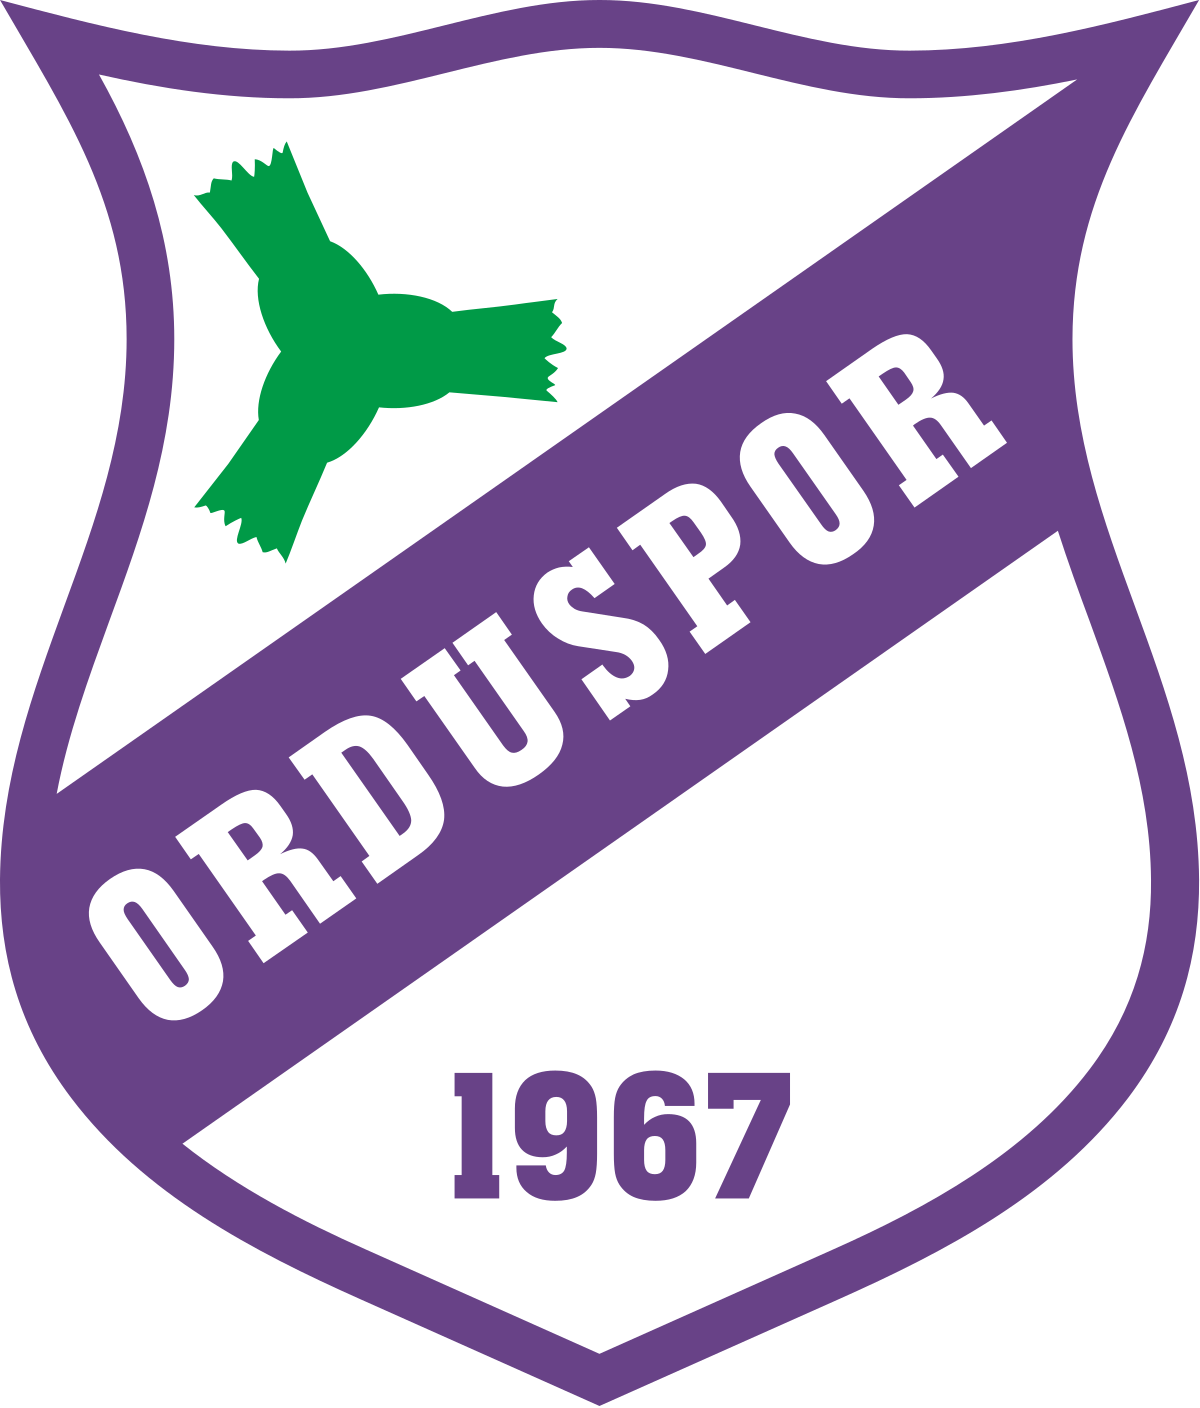 Orduspor 1967 logo